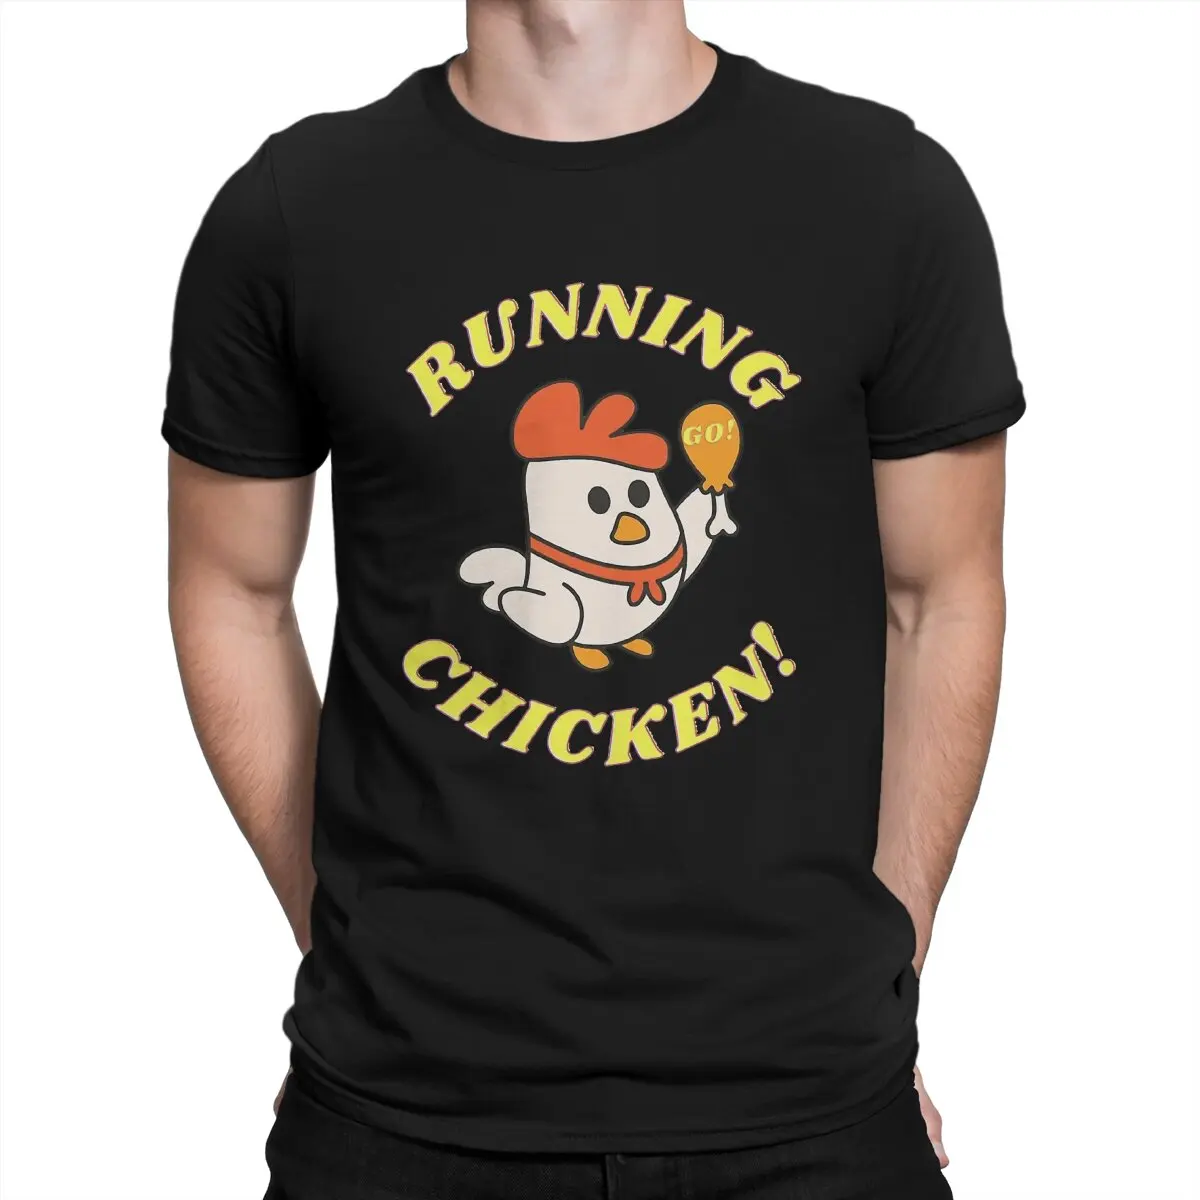 

Спортивная Мужская футболка, топы с круглым вырезом и курицей, 100% хлопок, забавная футболка, идея для подарка высшего качества